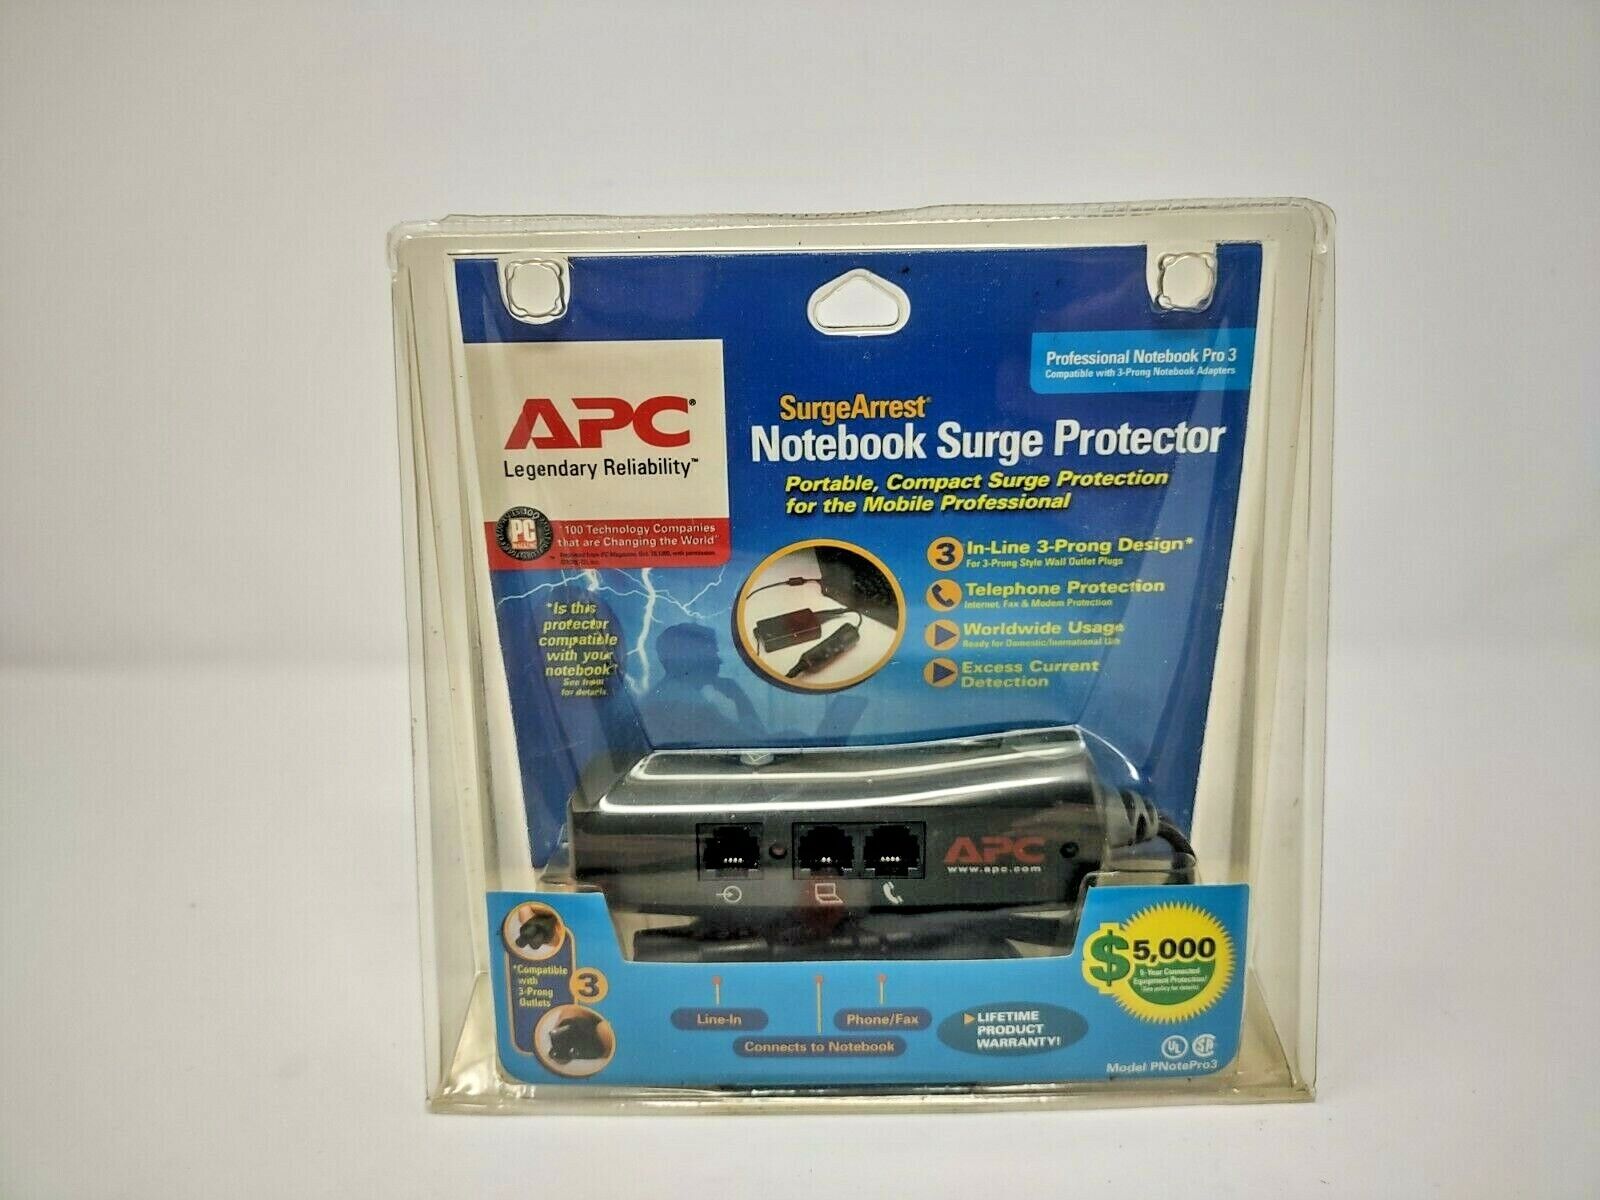 APC favorite SurgeArrest Notebook Surge Pro3 Protector Popular 3 In-Line